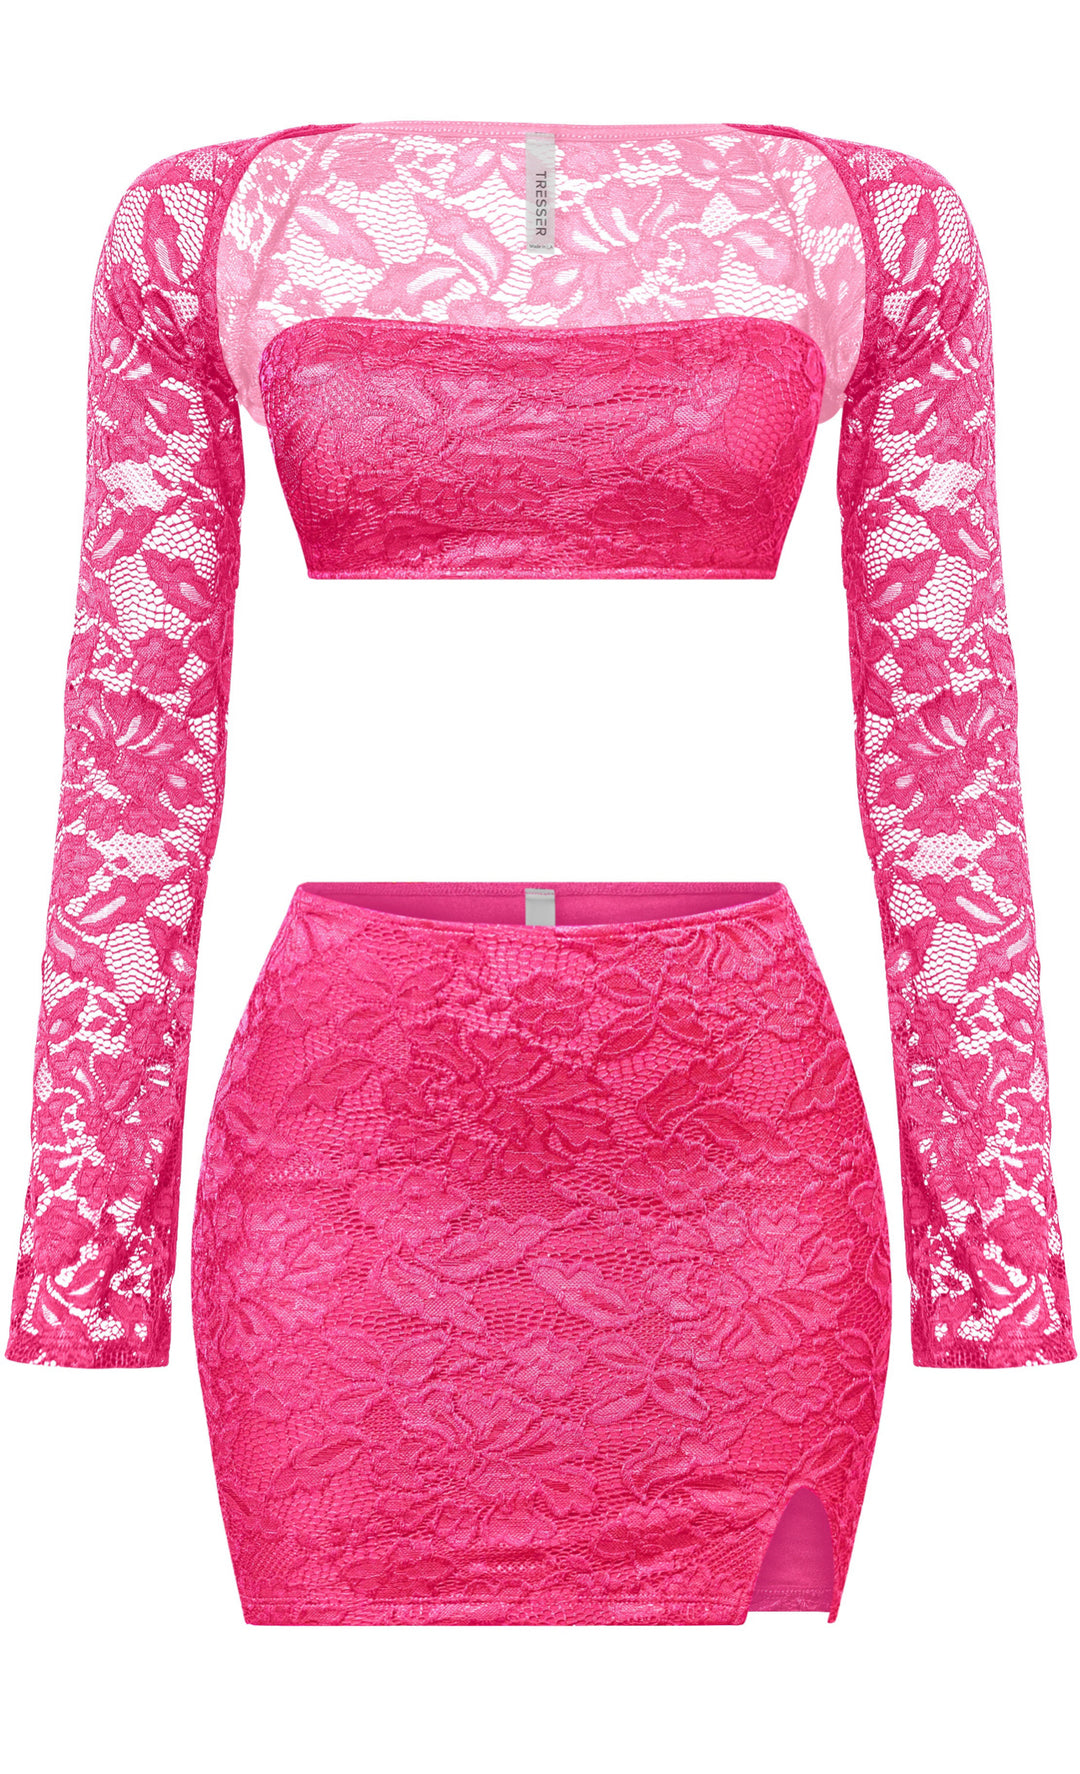 Kristine 3pc Lace Tube Bolero Top & Mini Skirt Set